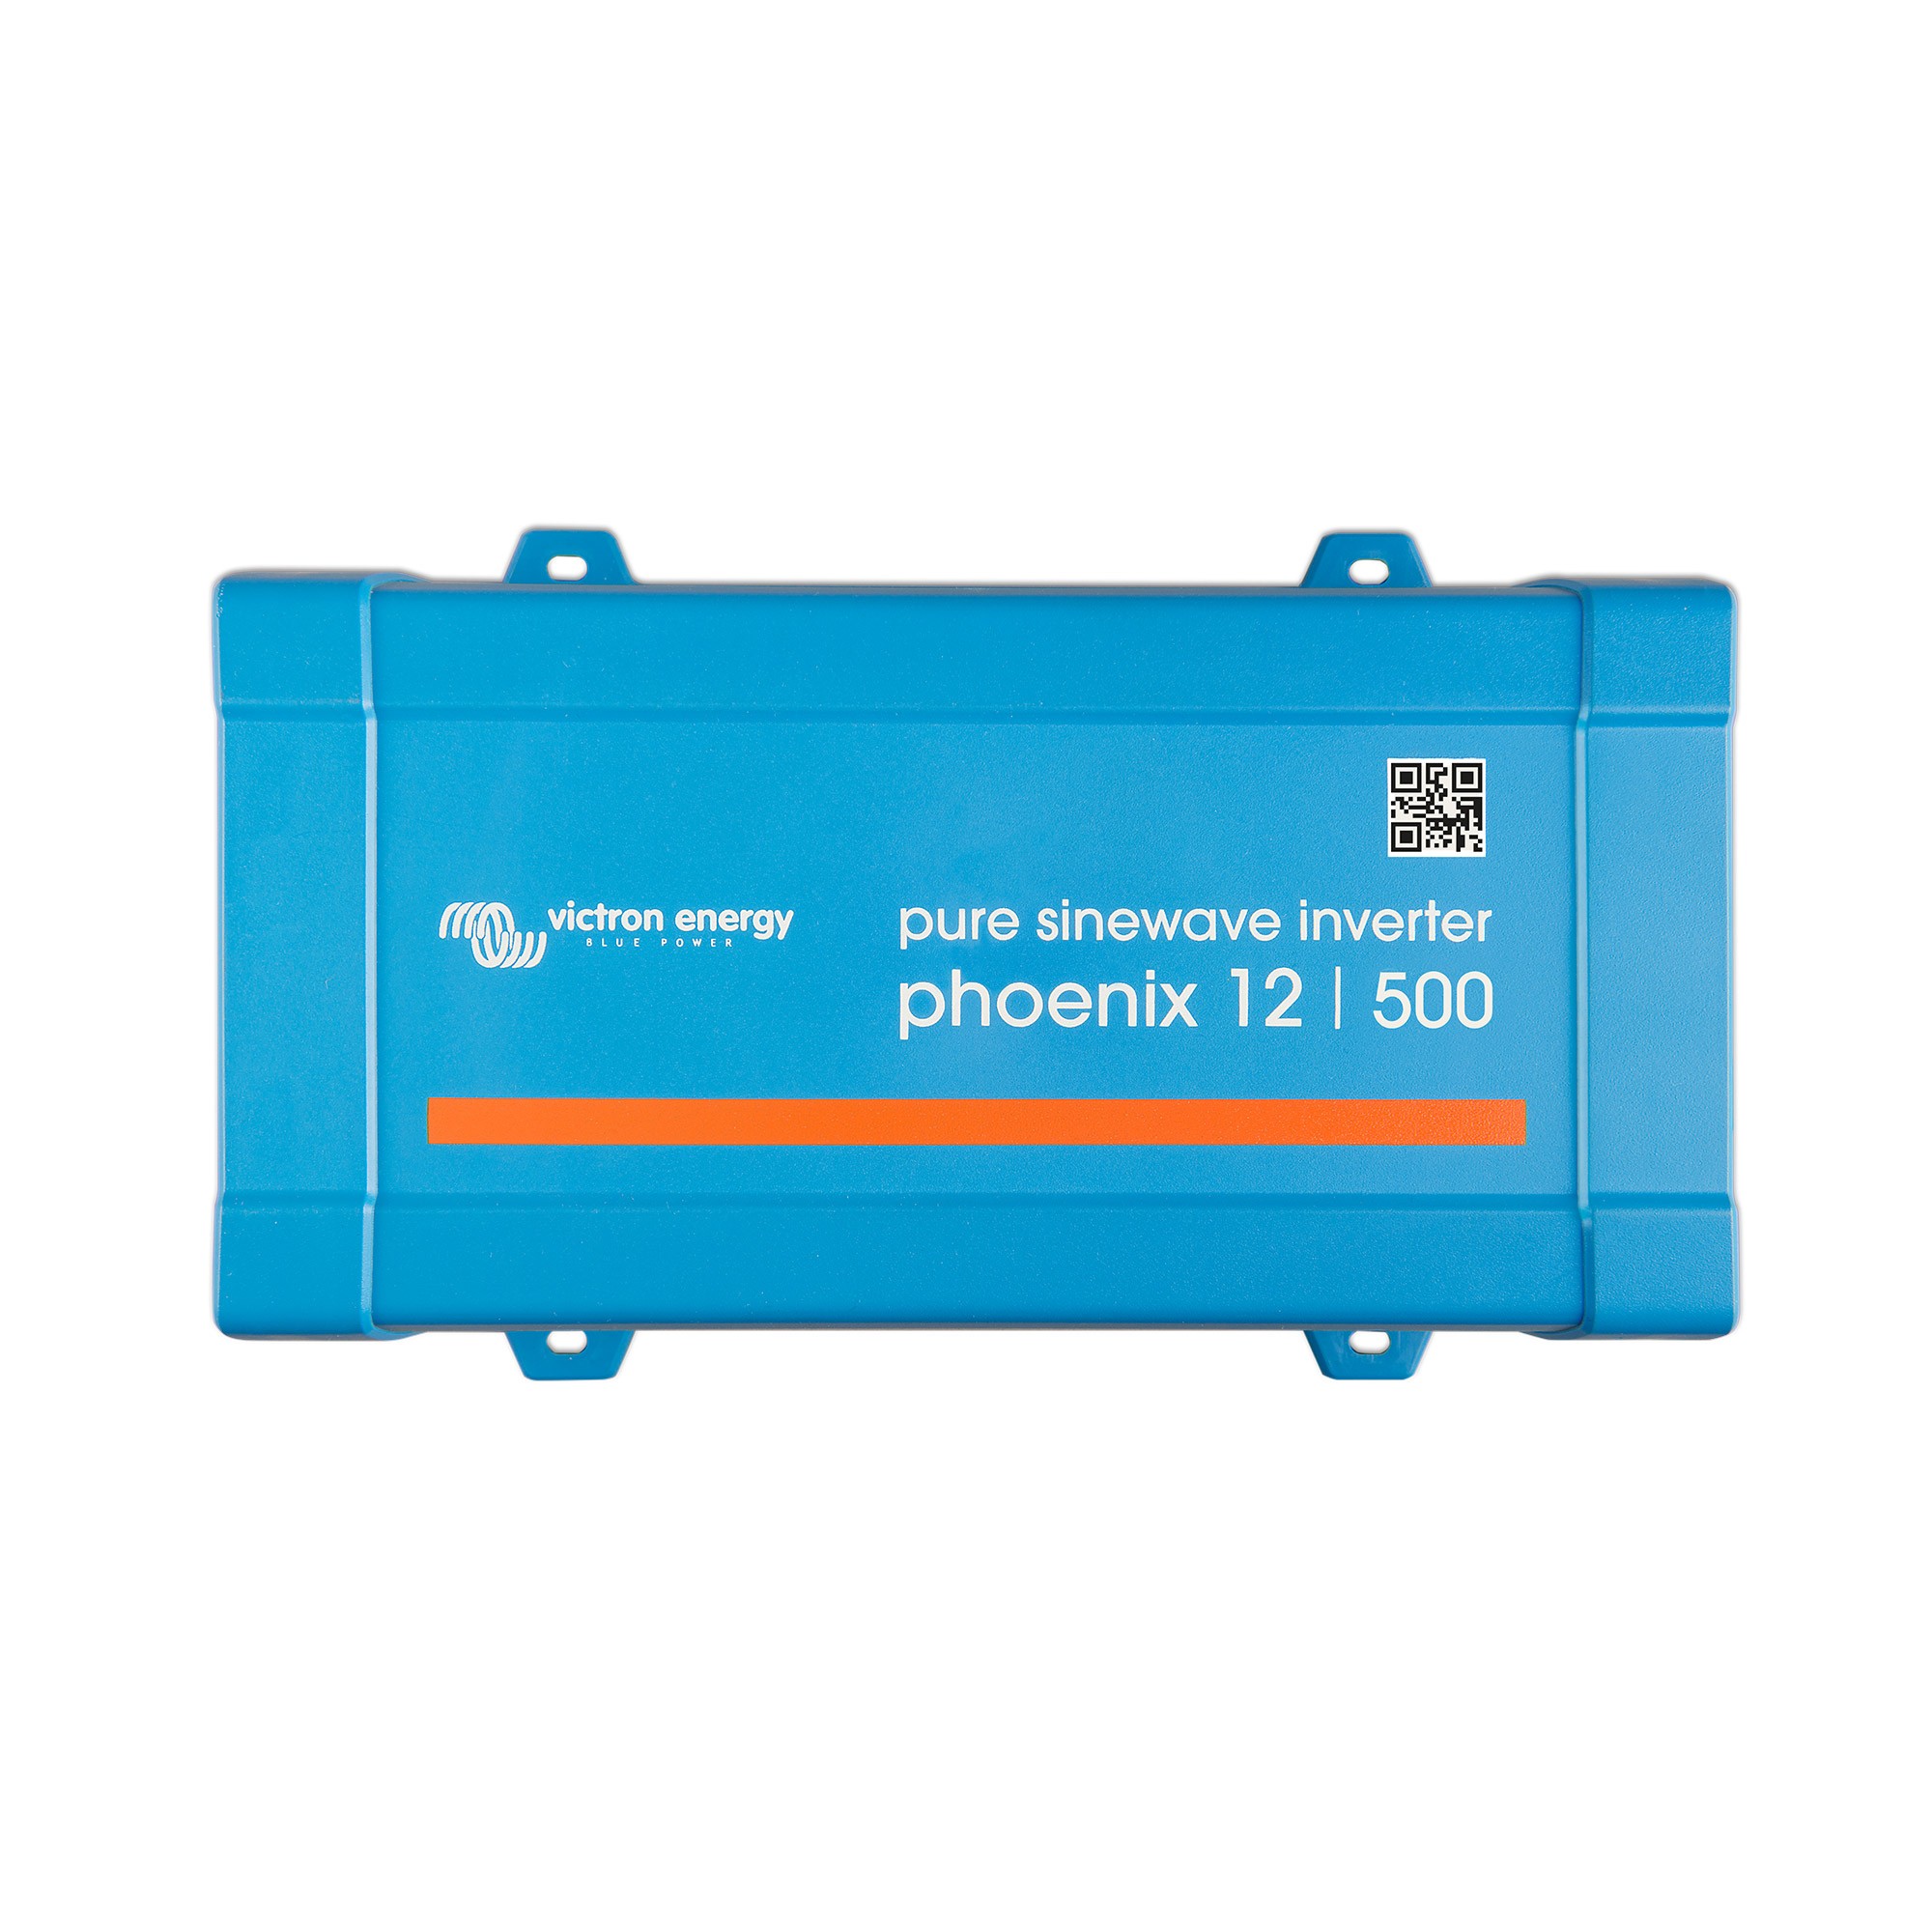 Wechselrichter Phoenix 12/500 230V VE.Direct IEC Victron Energy